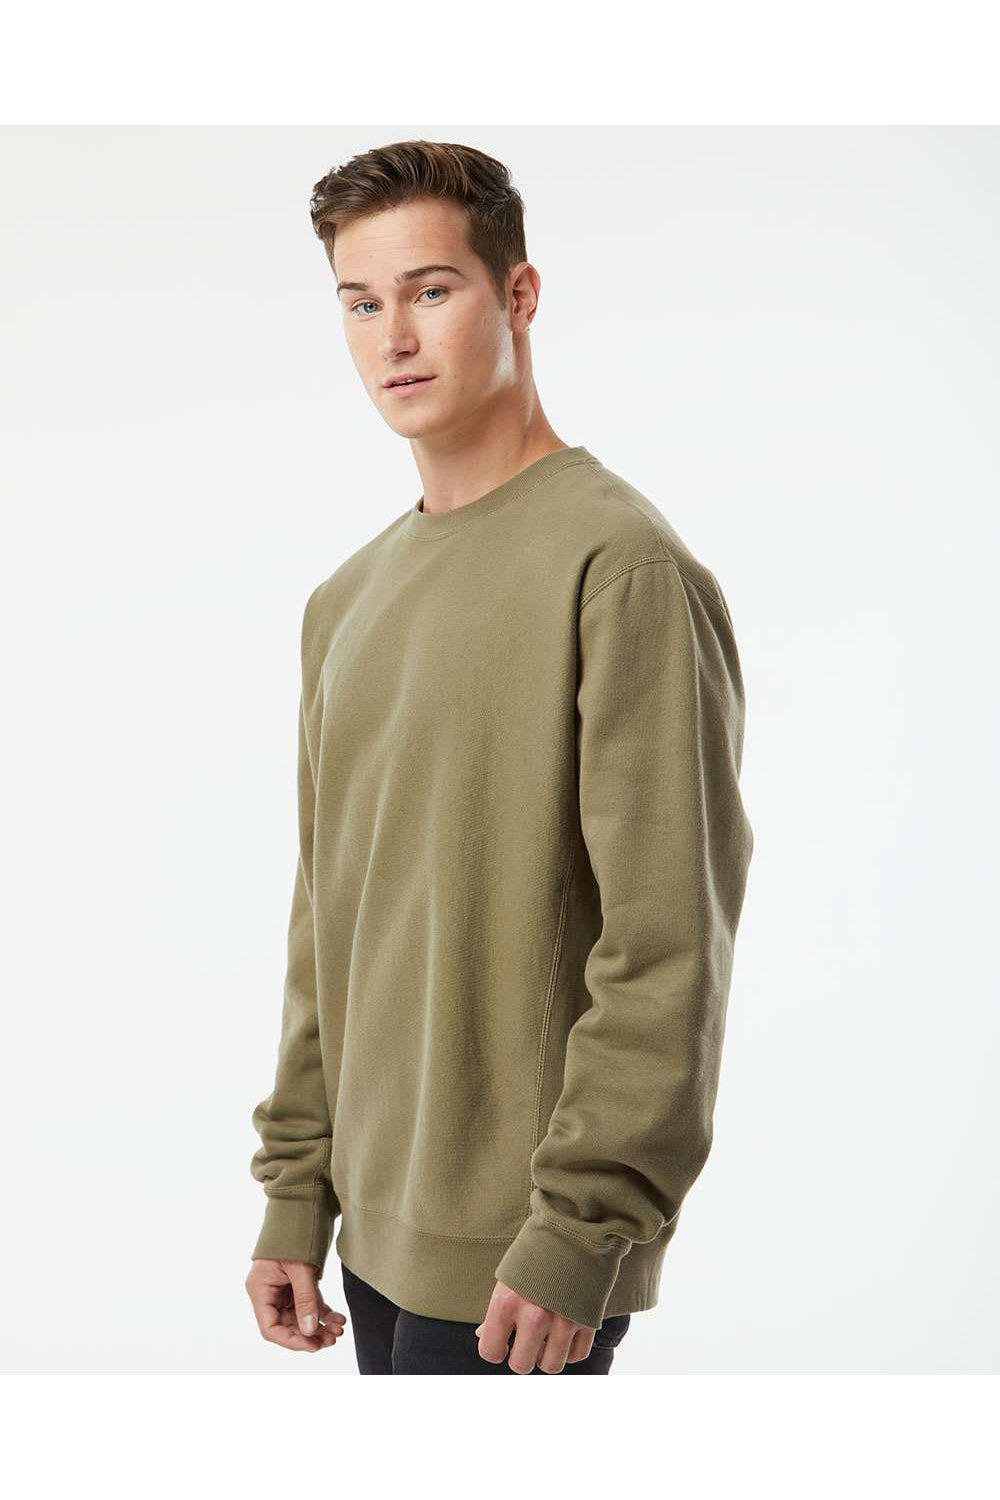 Independent Trading Co. IND5000C Mens Legend Crewneck Sweatshirt Olive Green Model Side